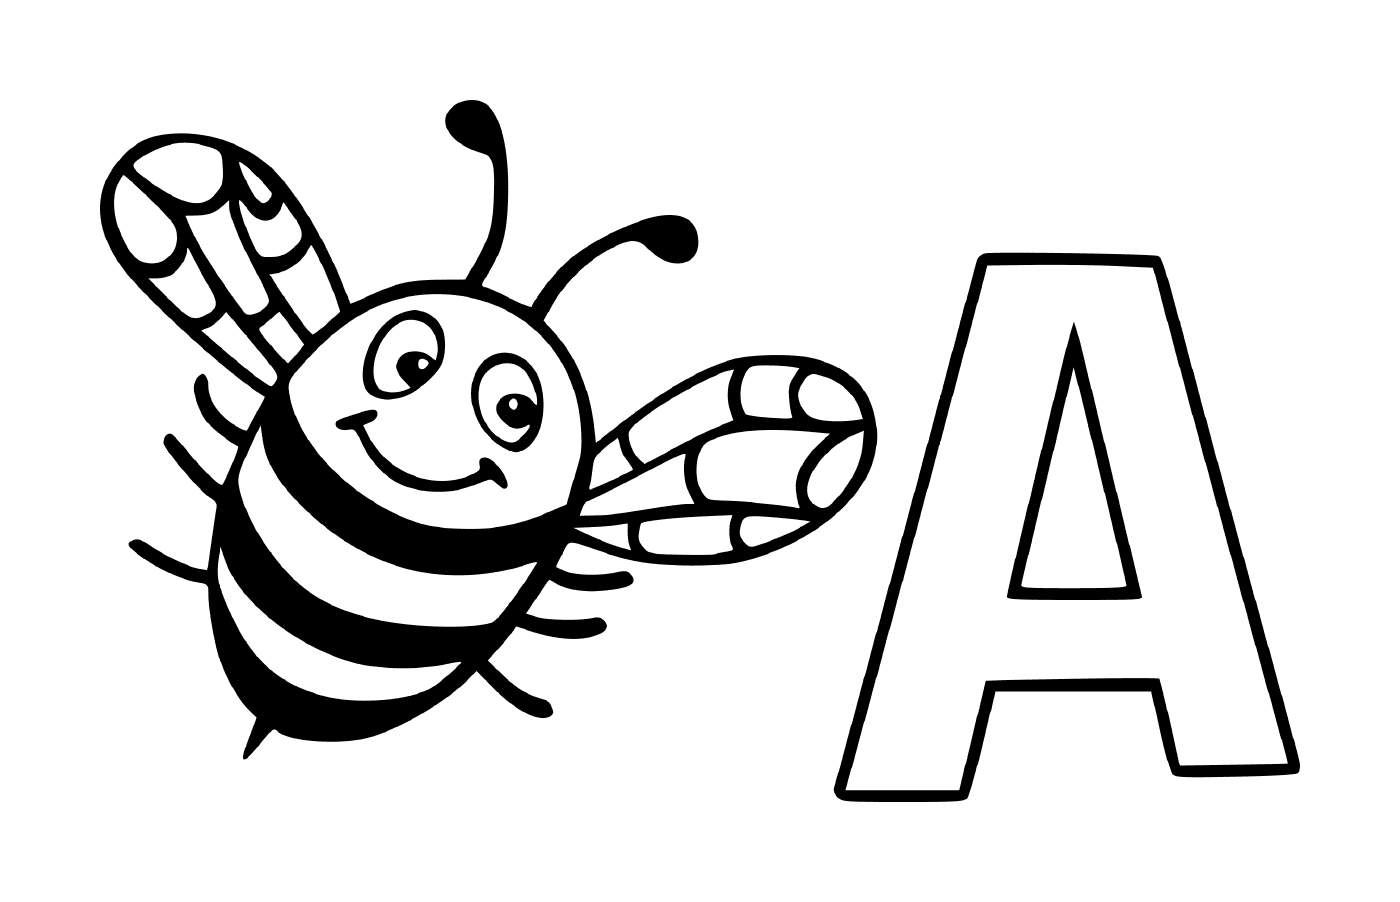  Carta A com uma abelha 